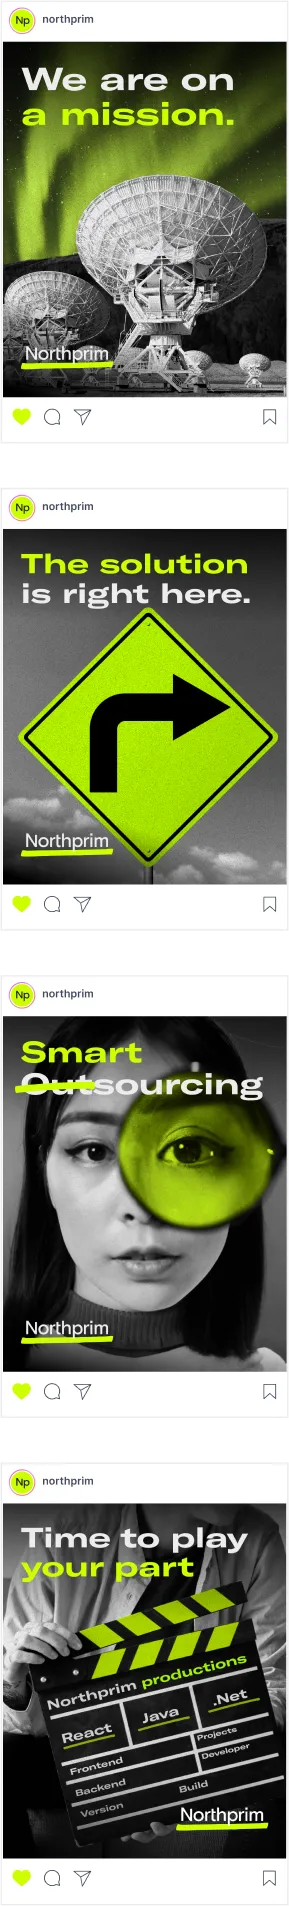 instagram feed northprim slide